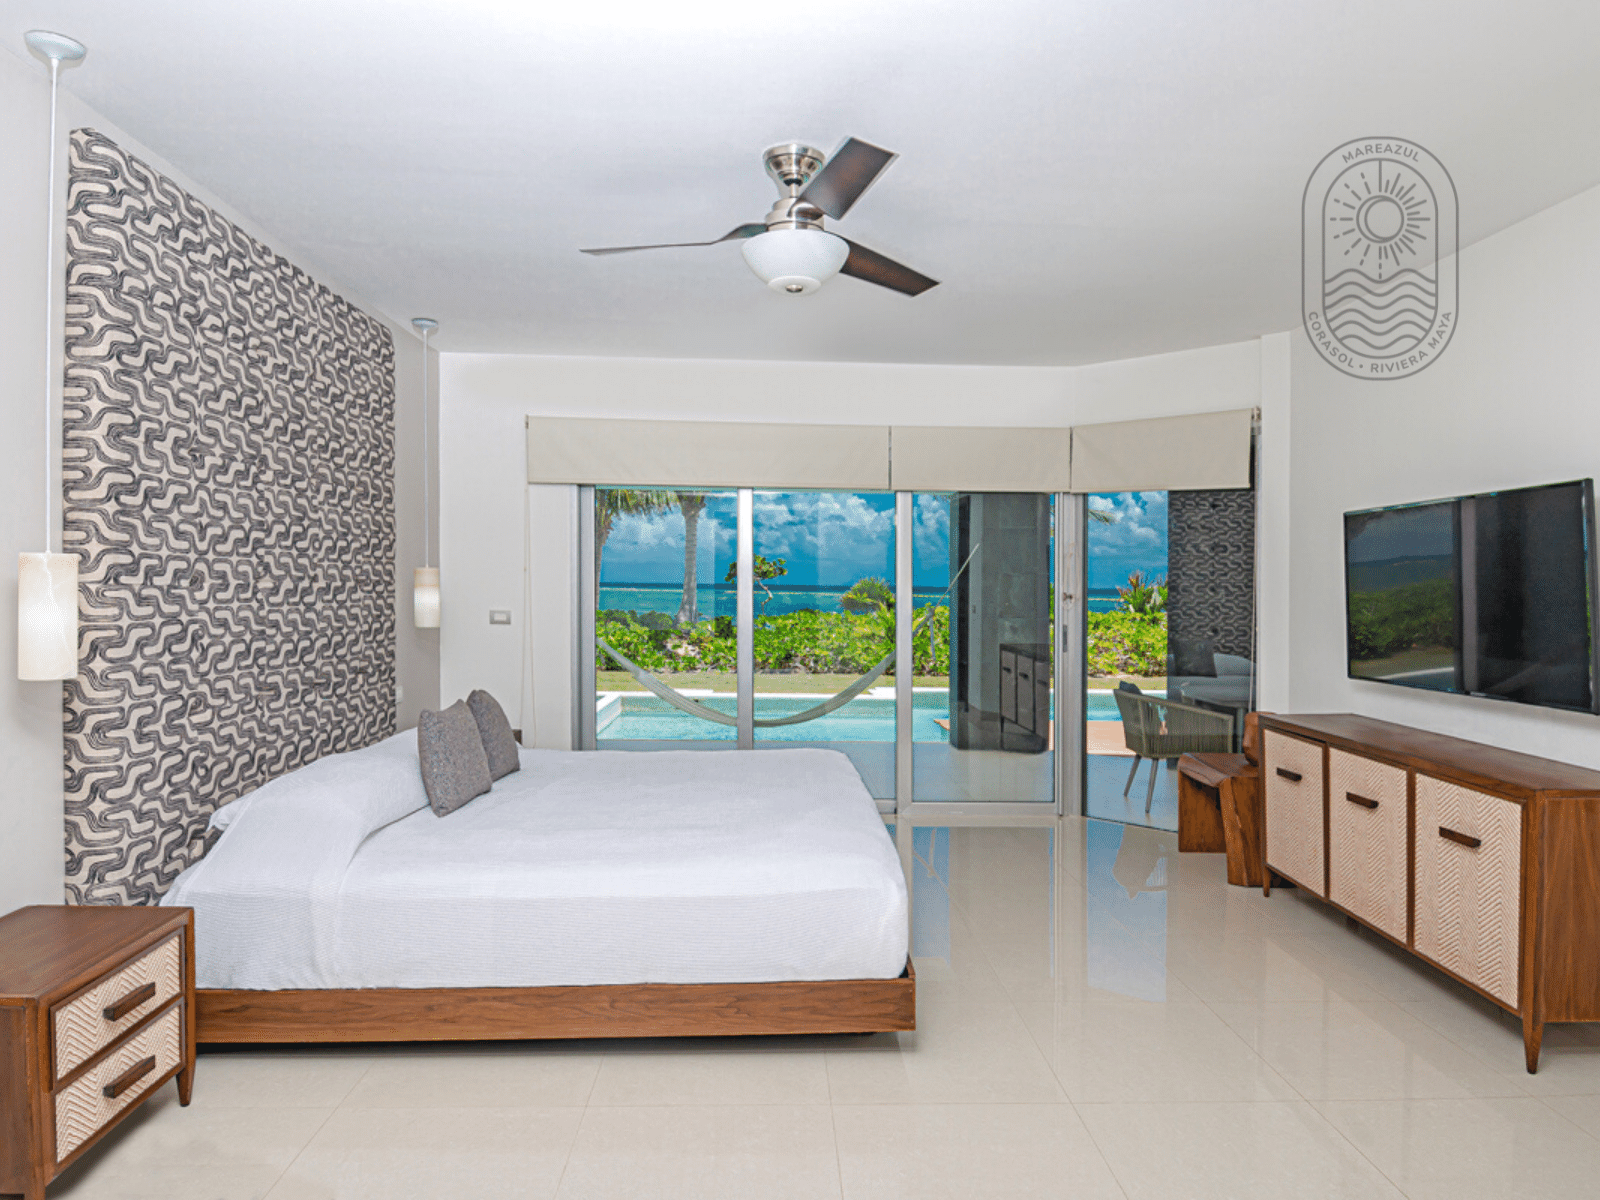 d playa del carmen condos for sale mareazul bedroom